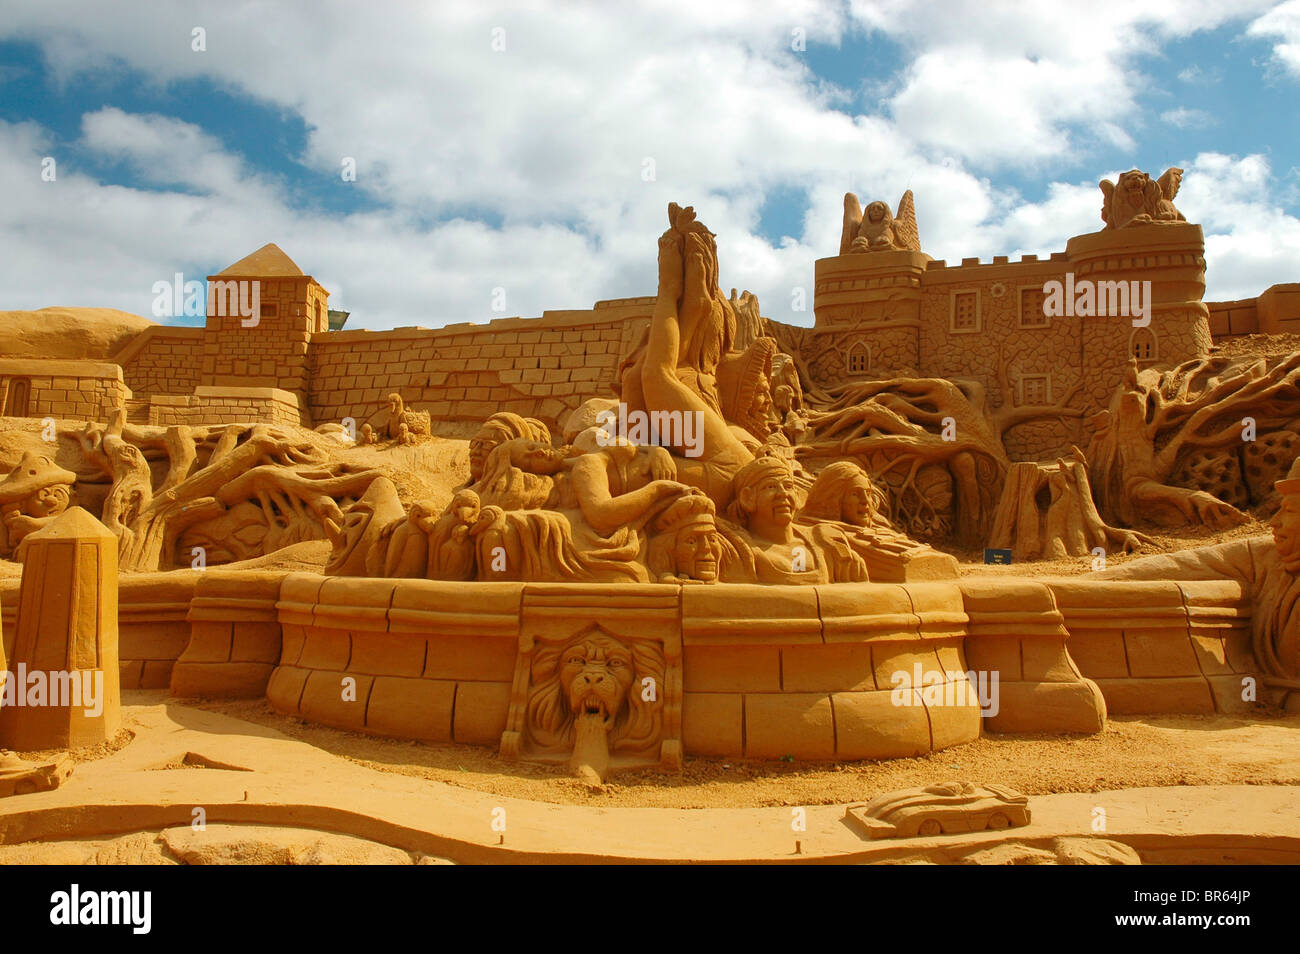 Festival de sculptures de sable, Blankenberge, Belgique Photo Stock - Alamy